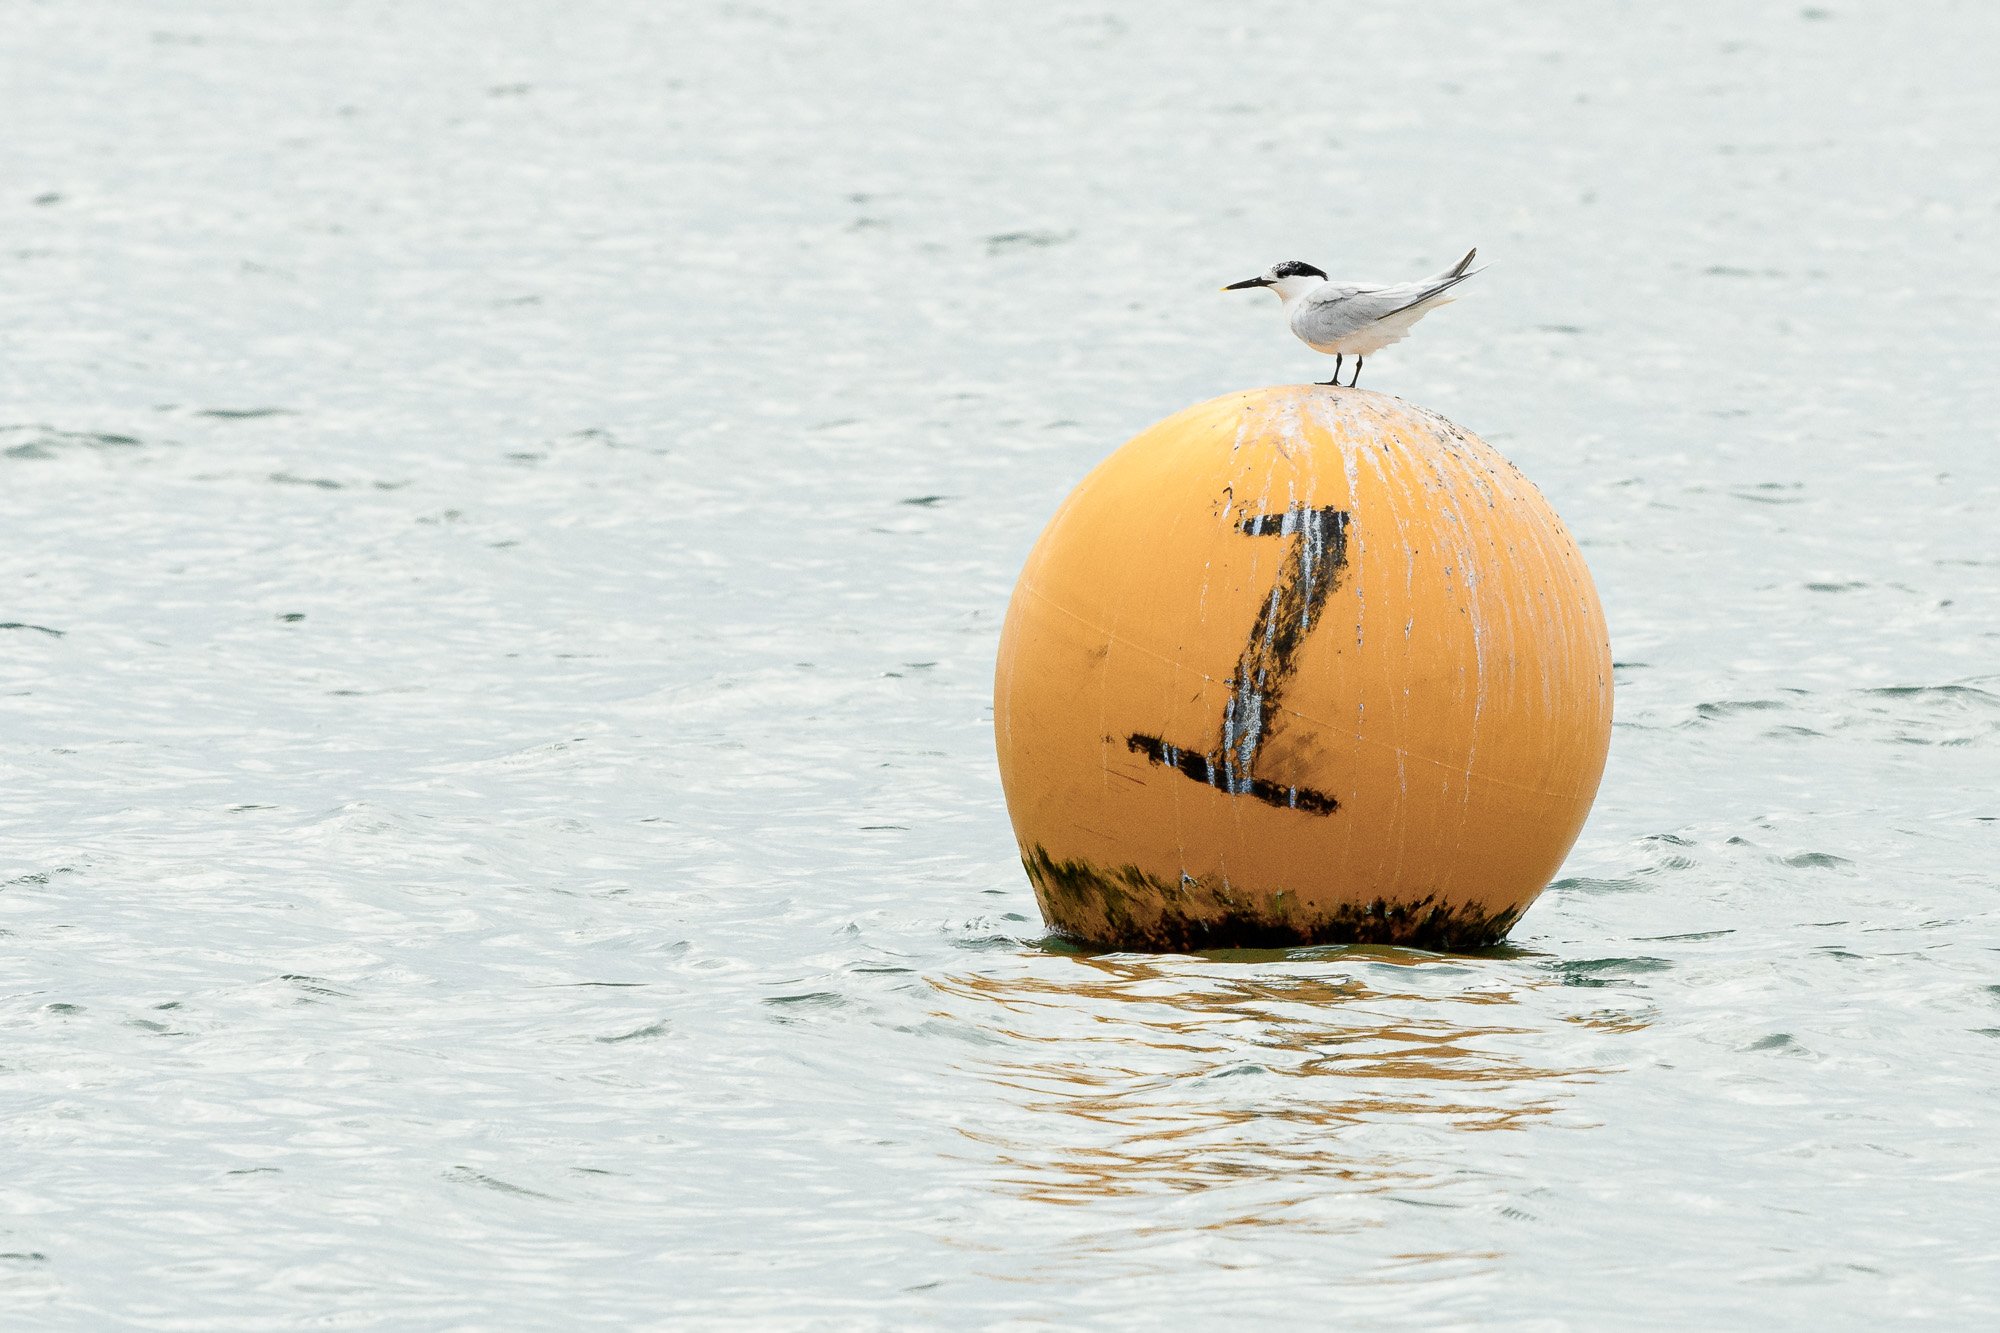 Sandwich tern on buoy